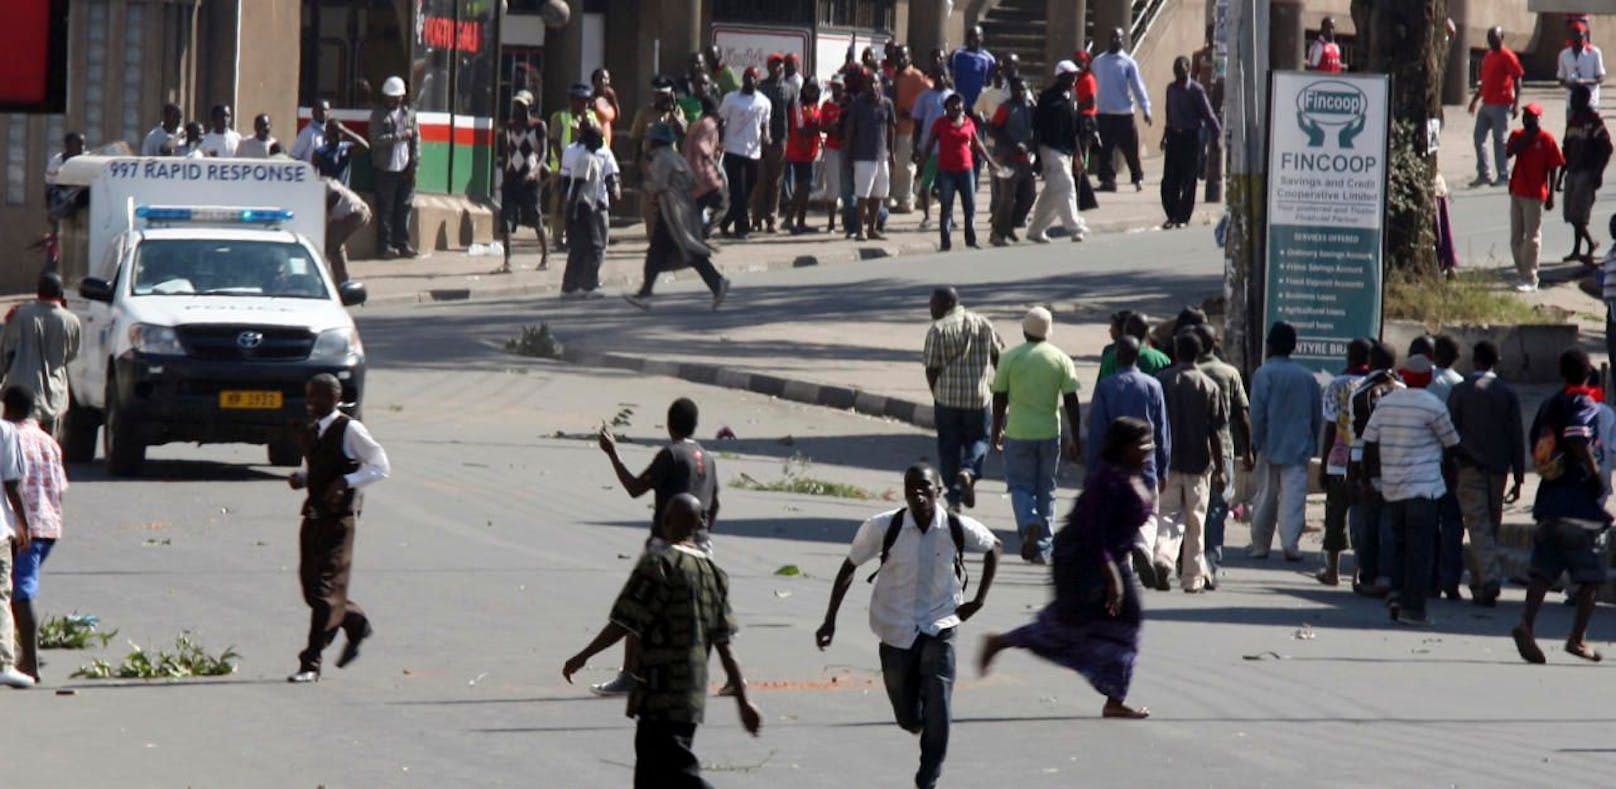 Abergläubischer Mob tötet 8 Menschen in Afrika